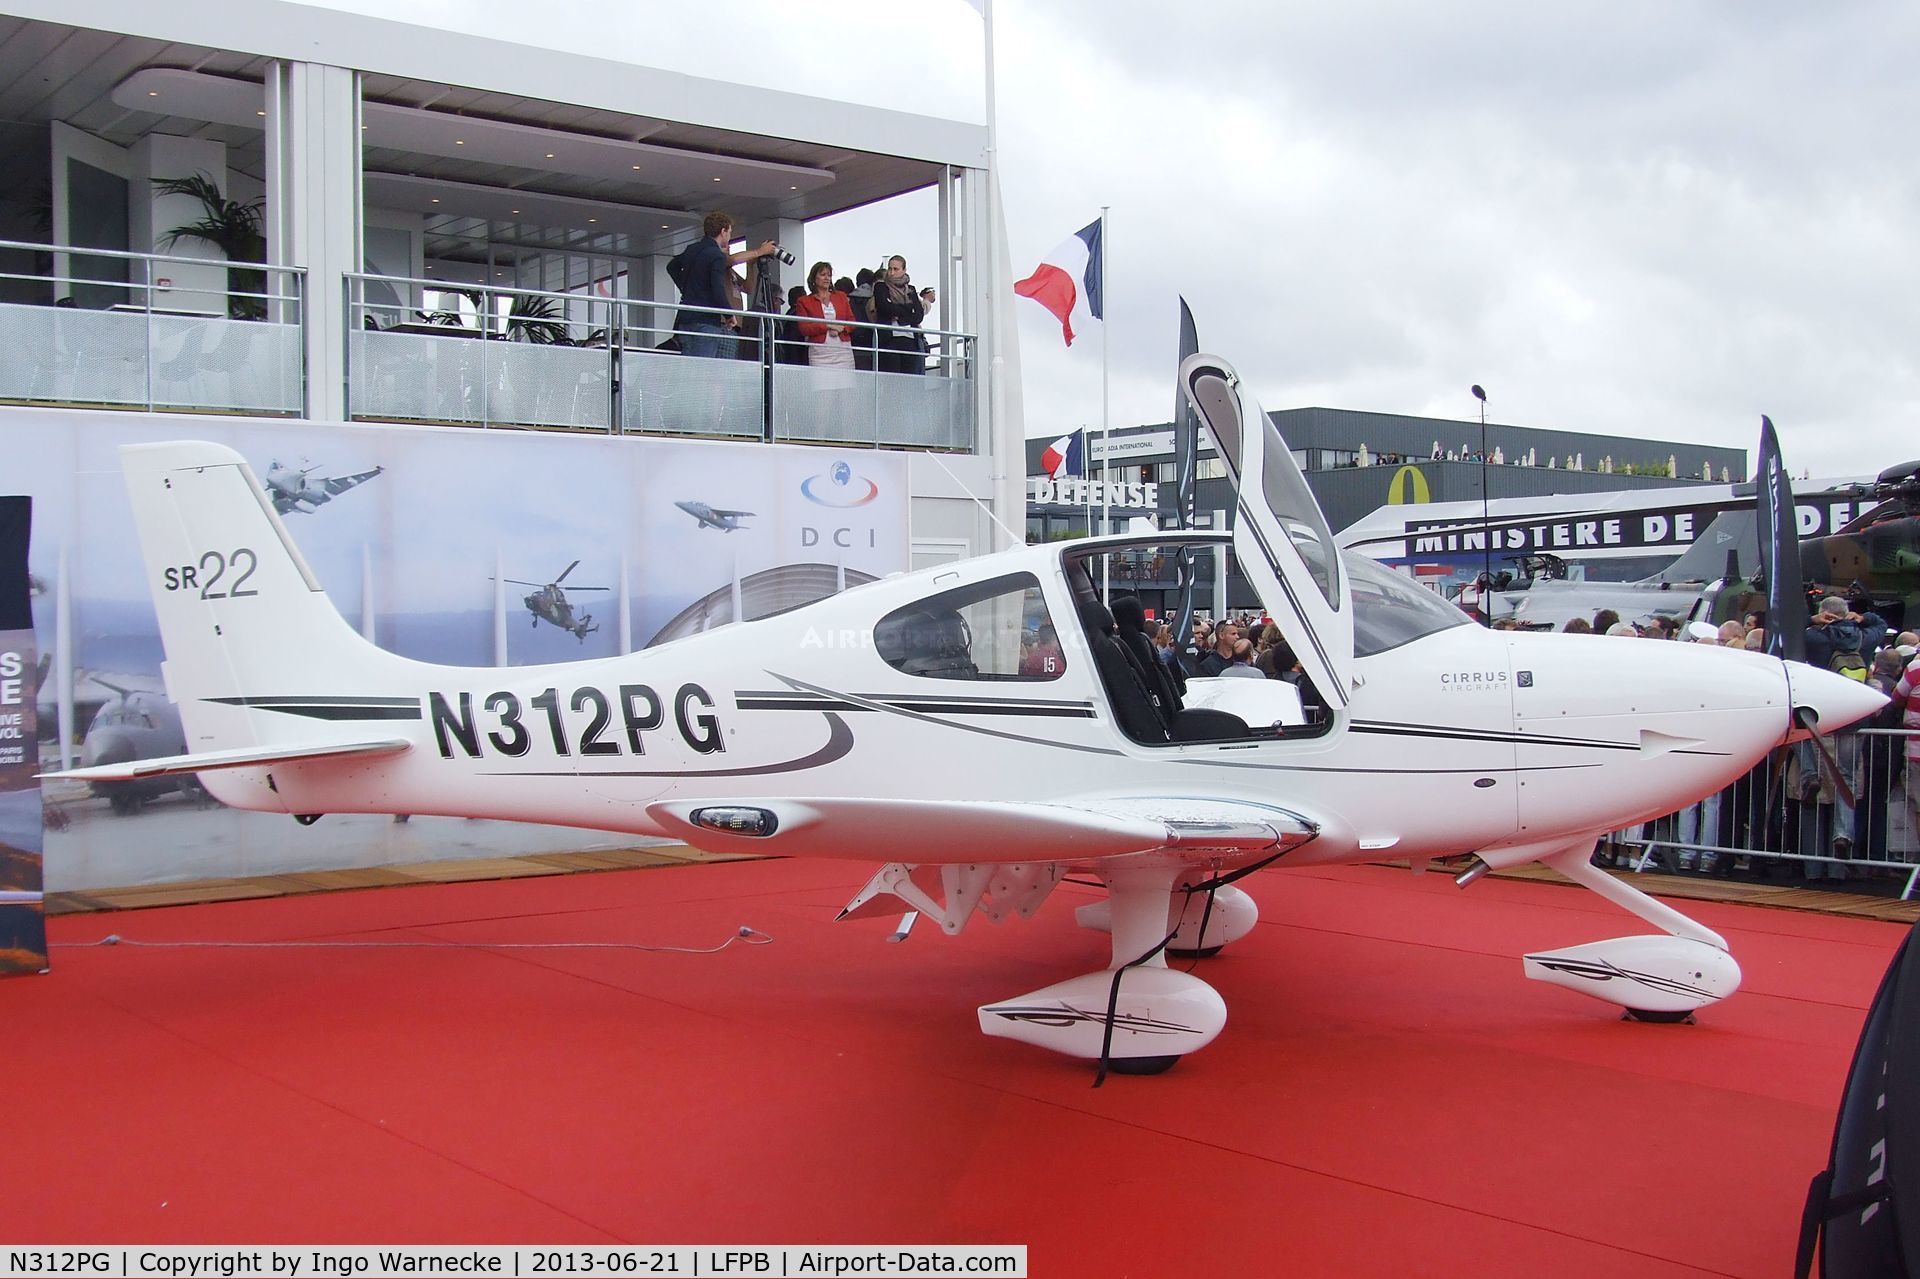 N312PG, Cirrus SR22 C/N 3934, Cirrus SR22 at the Aerosalon 2013, Paris